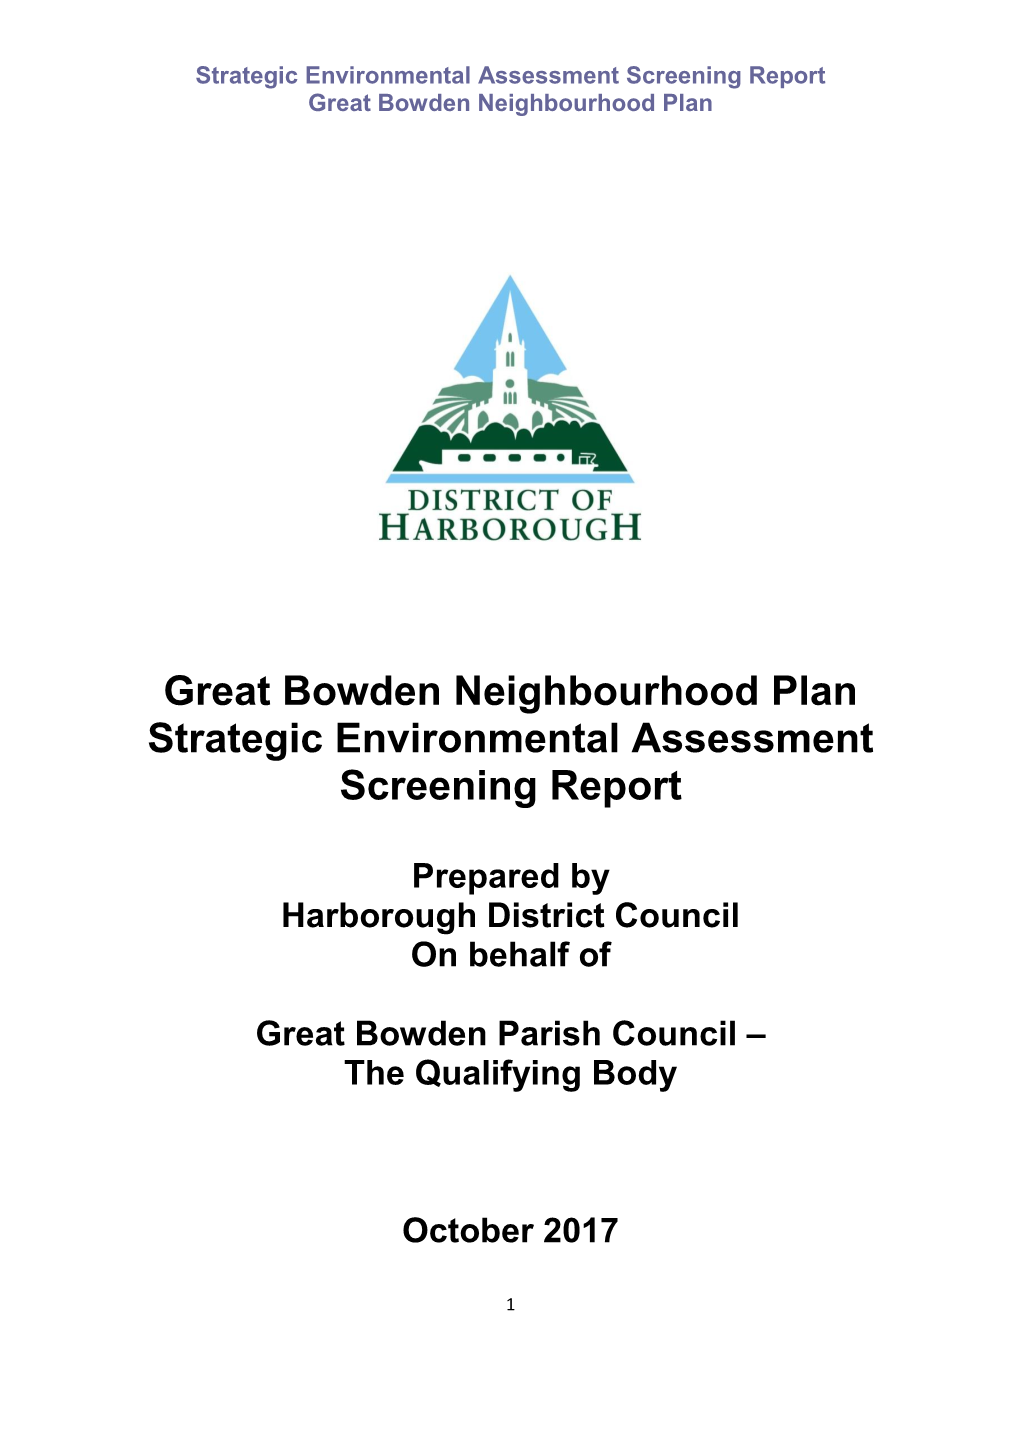 Great Bowden Neighbourhood Plan Strategic Environmental Assessment Screening Report